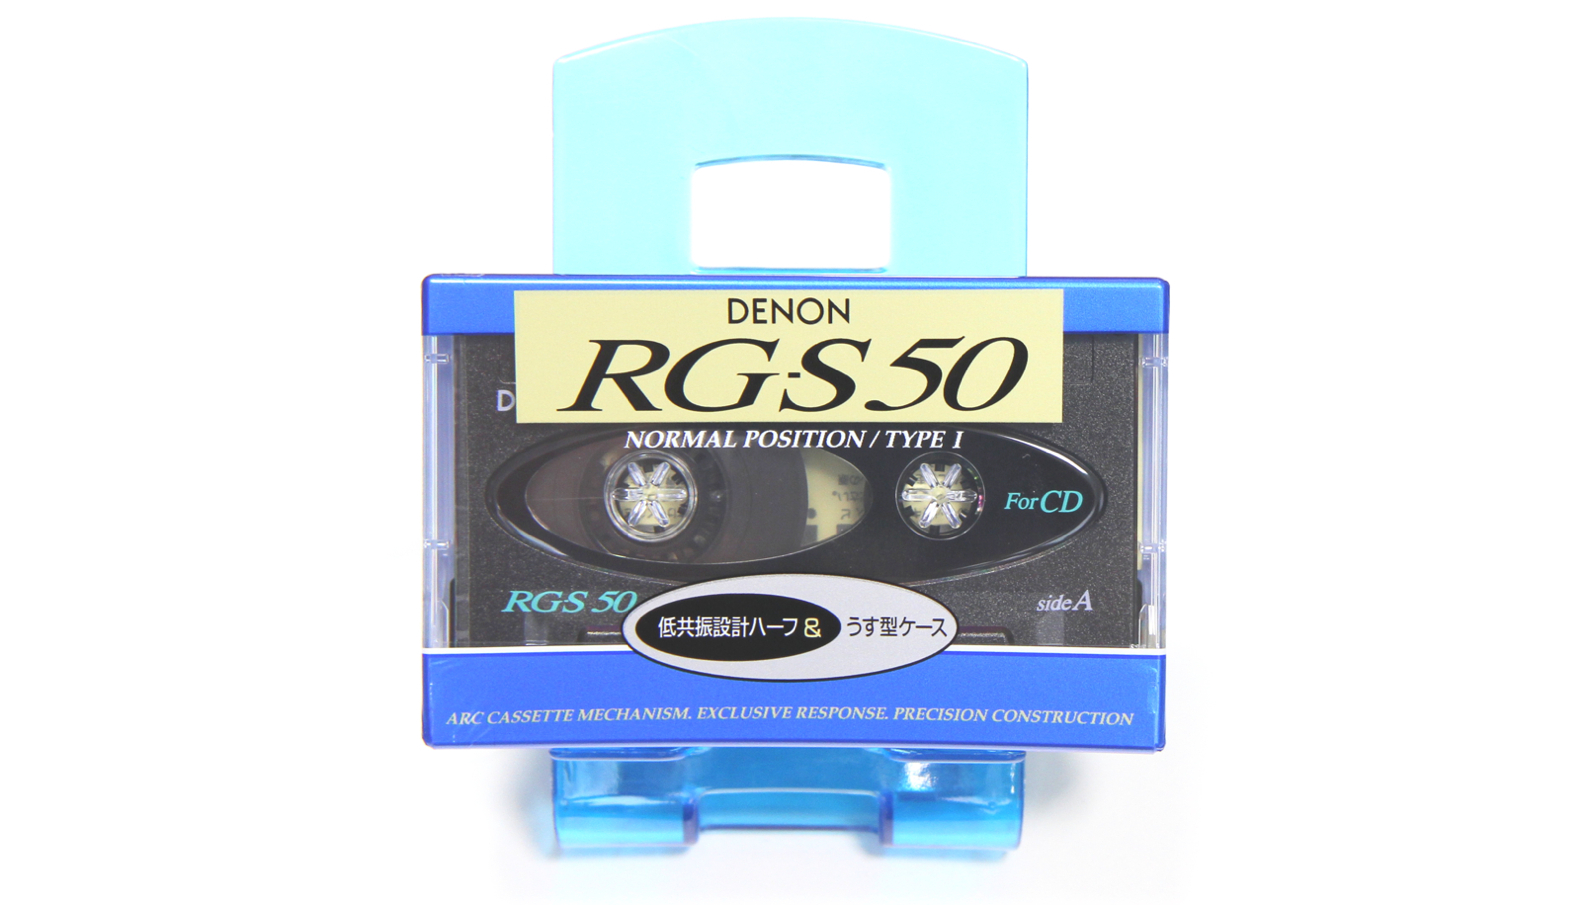 DENON RG-S50s Japan